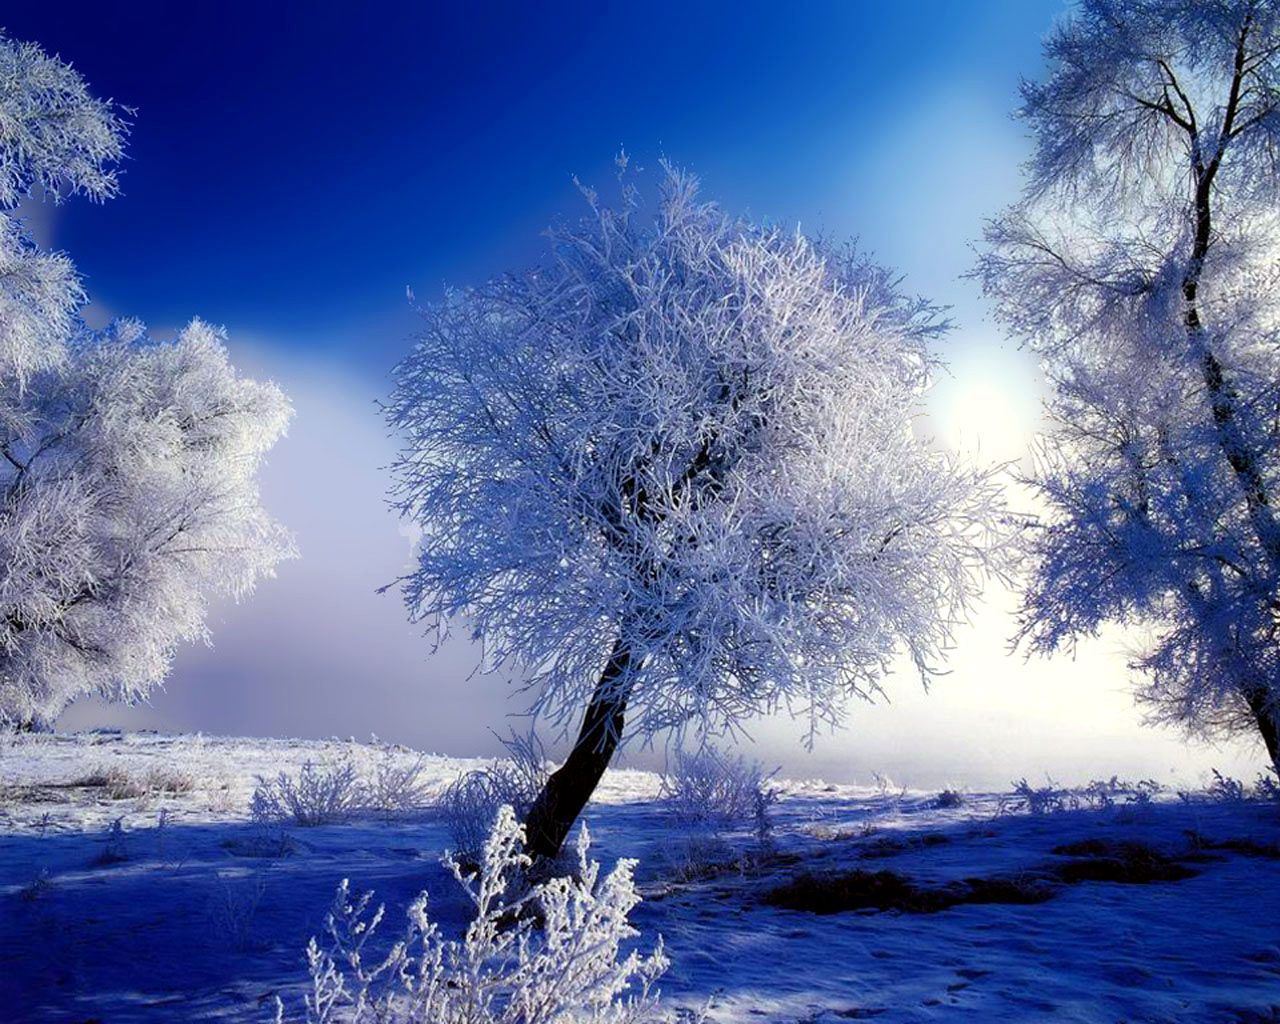 Snow Scenery HD Wallpaper 1920x1080 ID56947